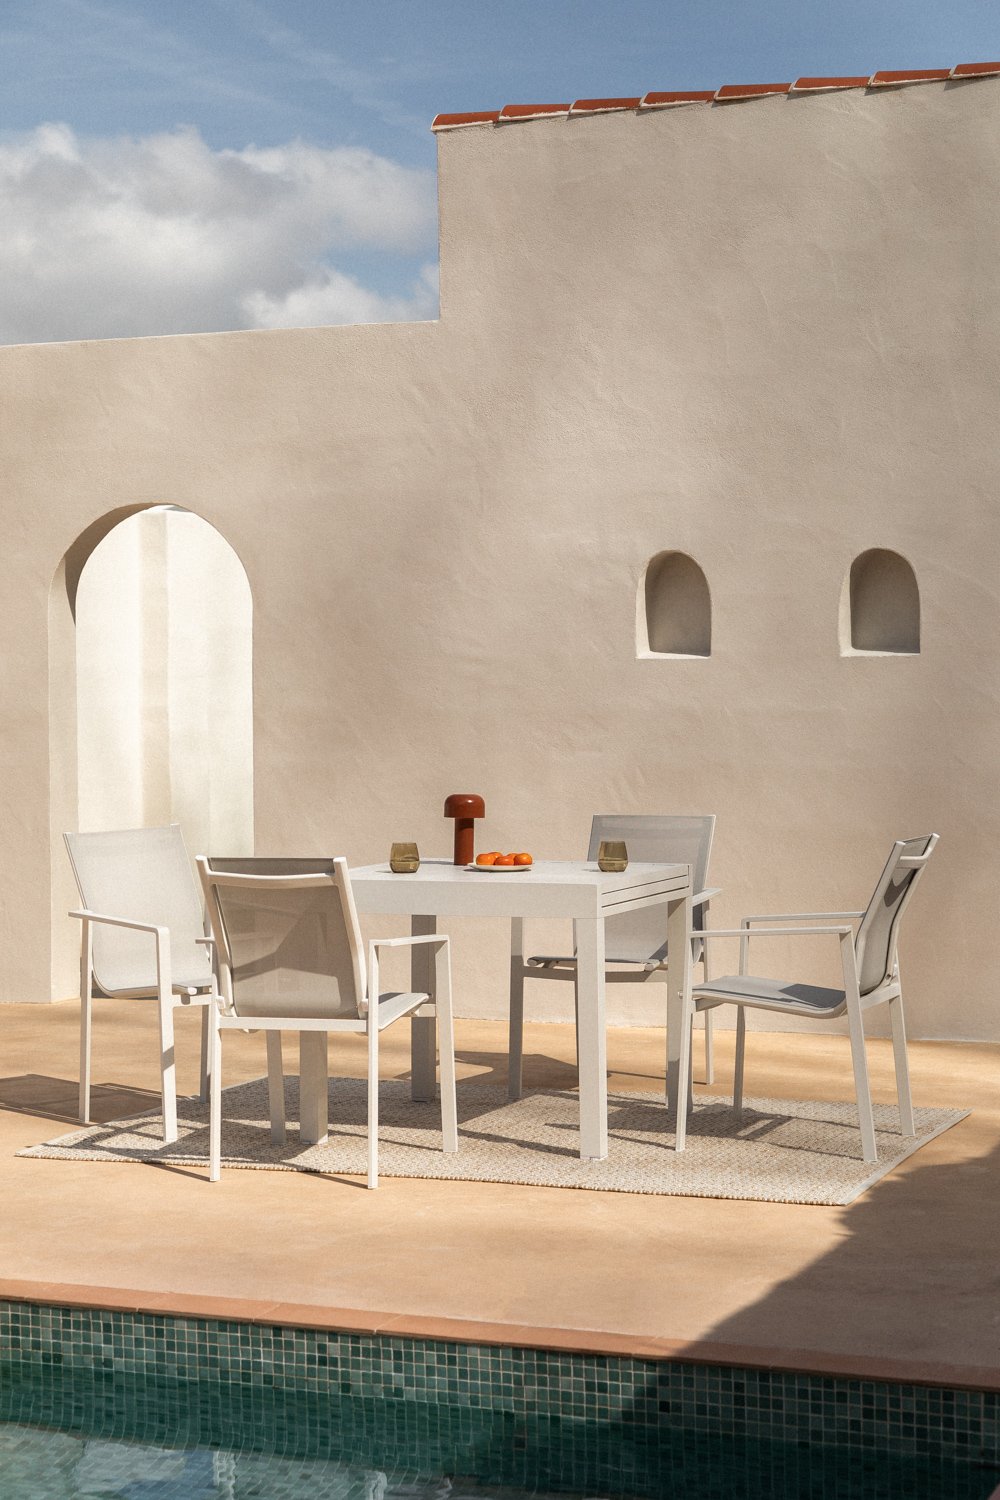 Aluminium rechthoekige uitschuifbare tafelset (90-180x90 cm) Starmi en 4 Eika buitenstoelen, galerij beeld 1